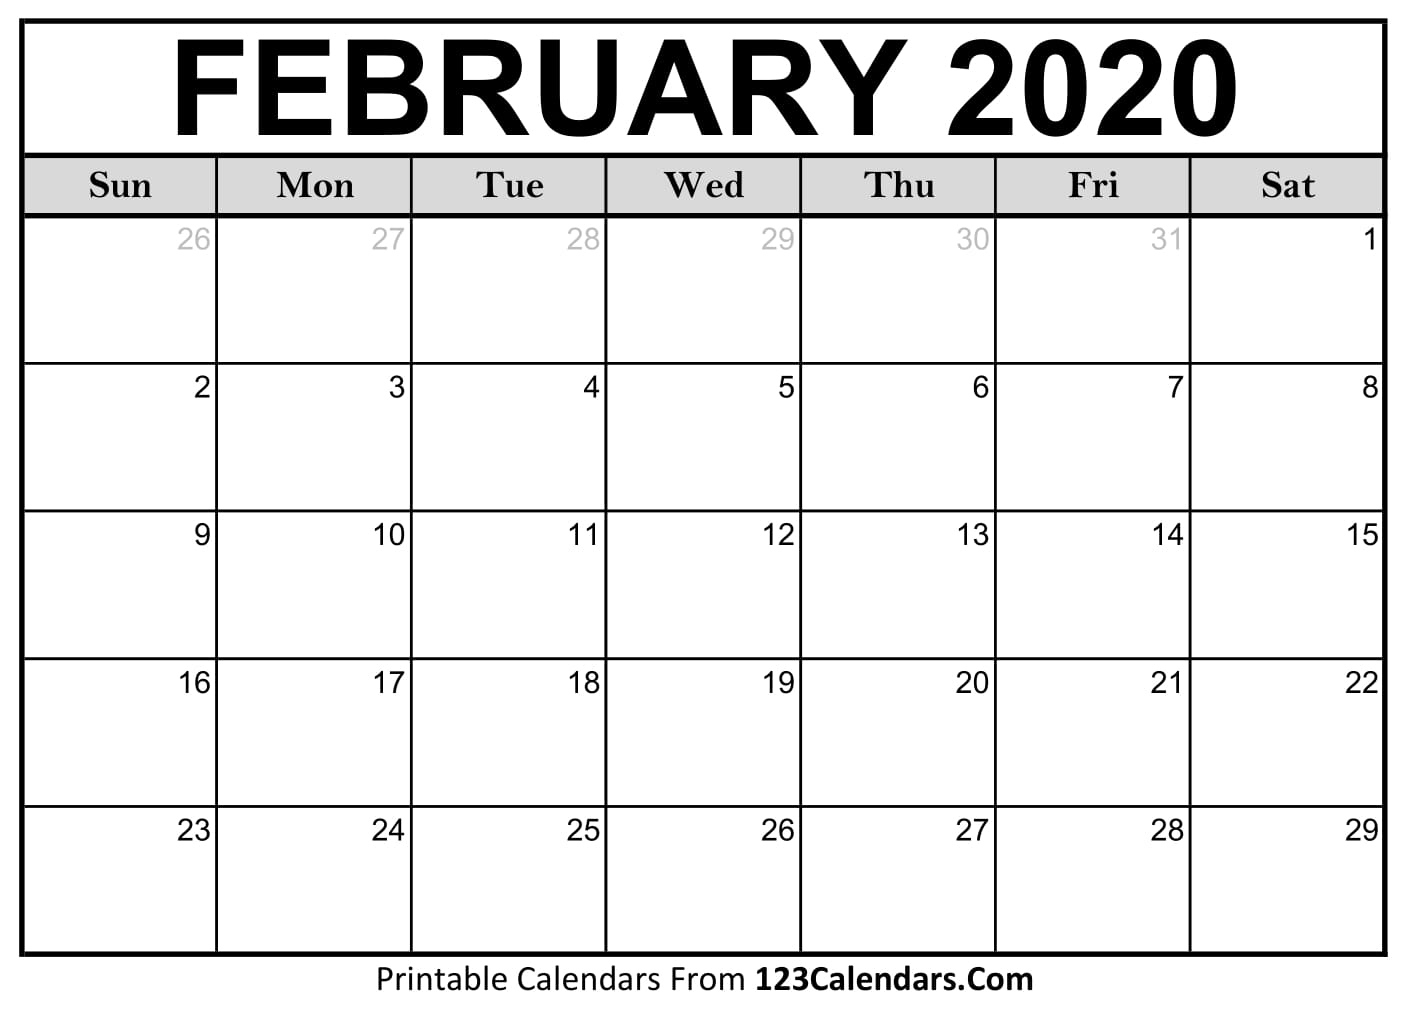 February 2020 Printable Calendar | 123Calendars Calendar September 2020 To February 2021